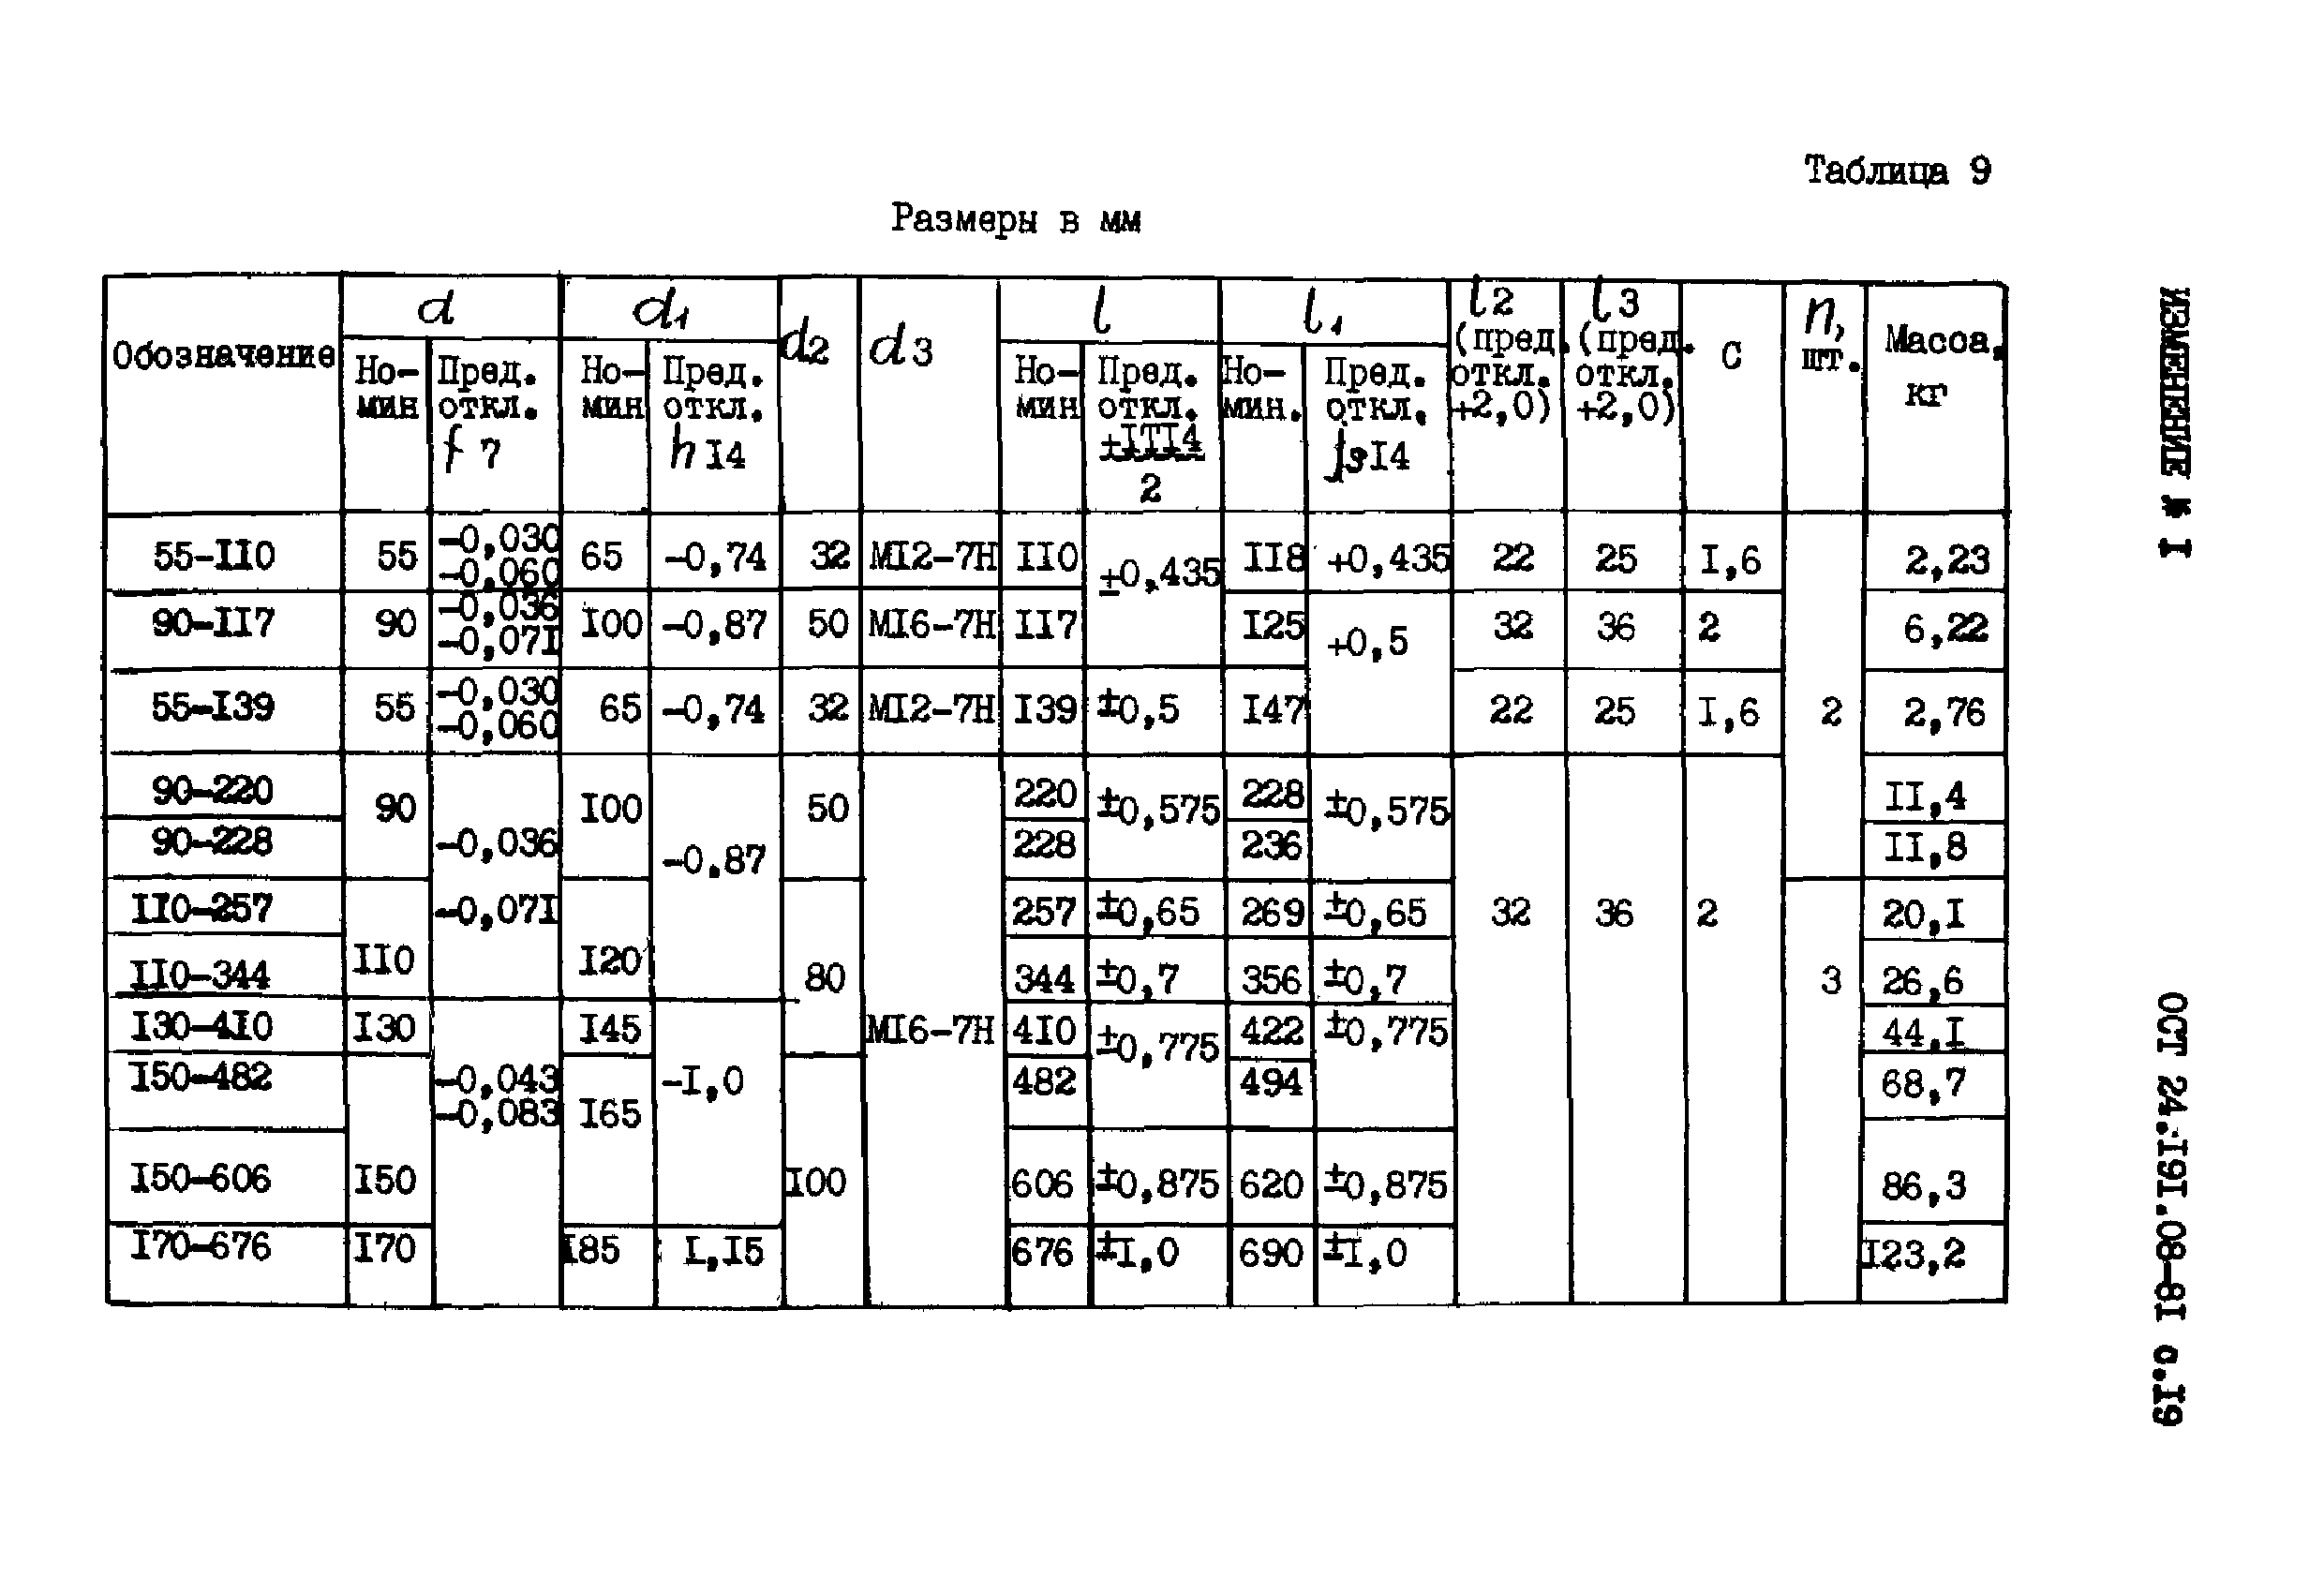 ОСТ 24.191.08-81